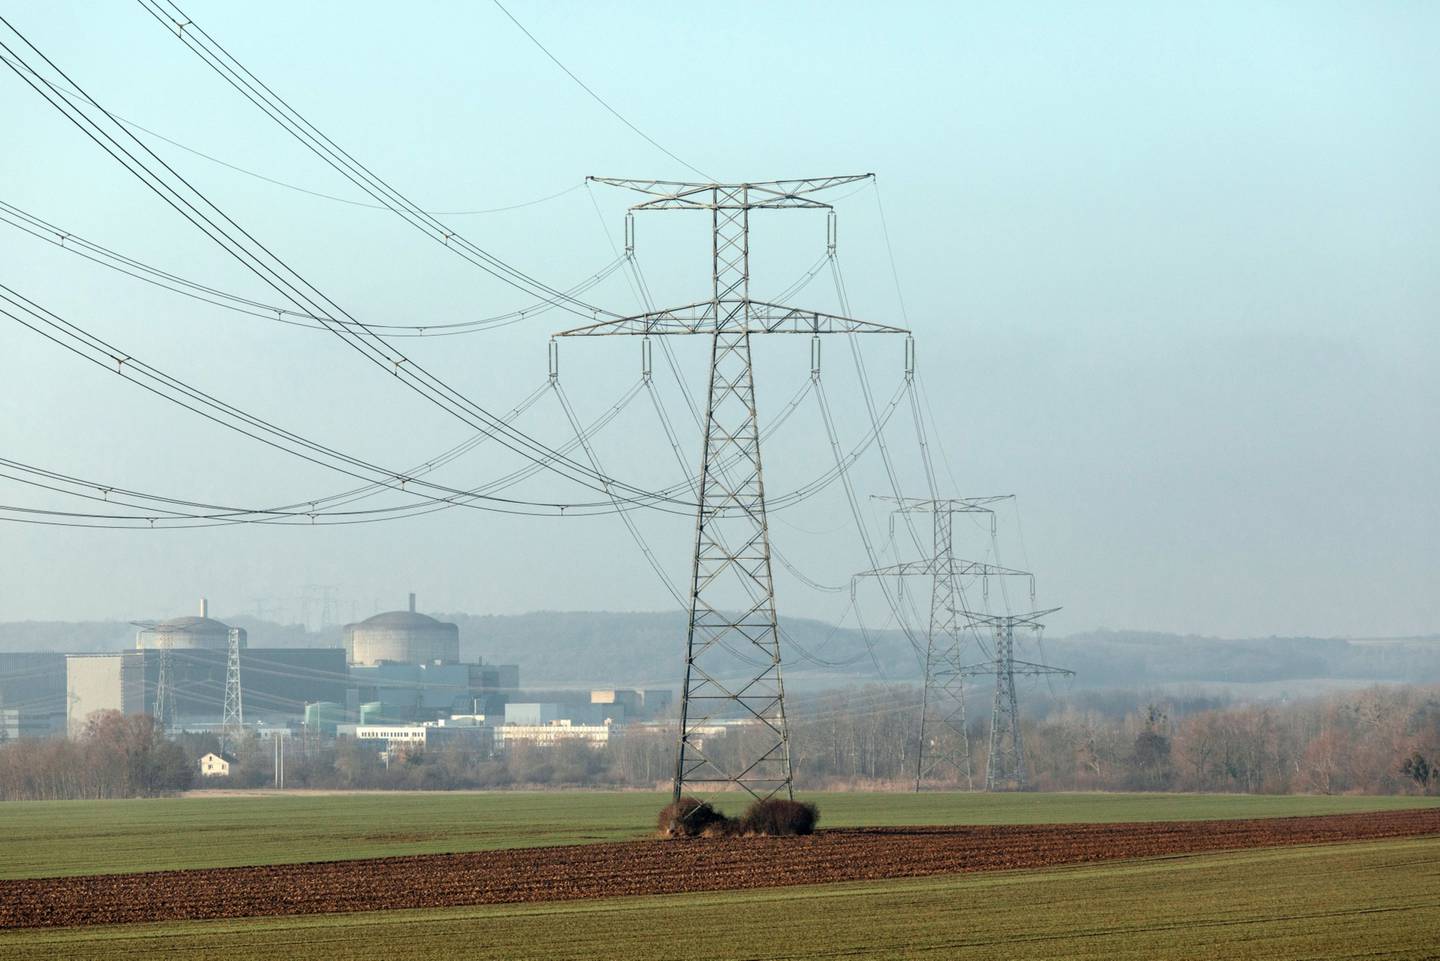 O sistema de energia de Kosovo está “sobrecarregado”, de acordo com a concessionária KEDS, que pediu “economia máxima de energia”.